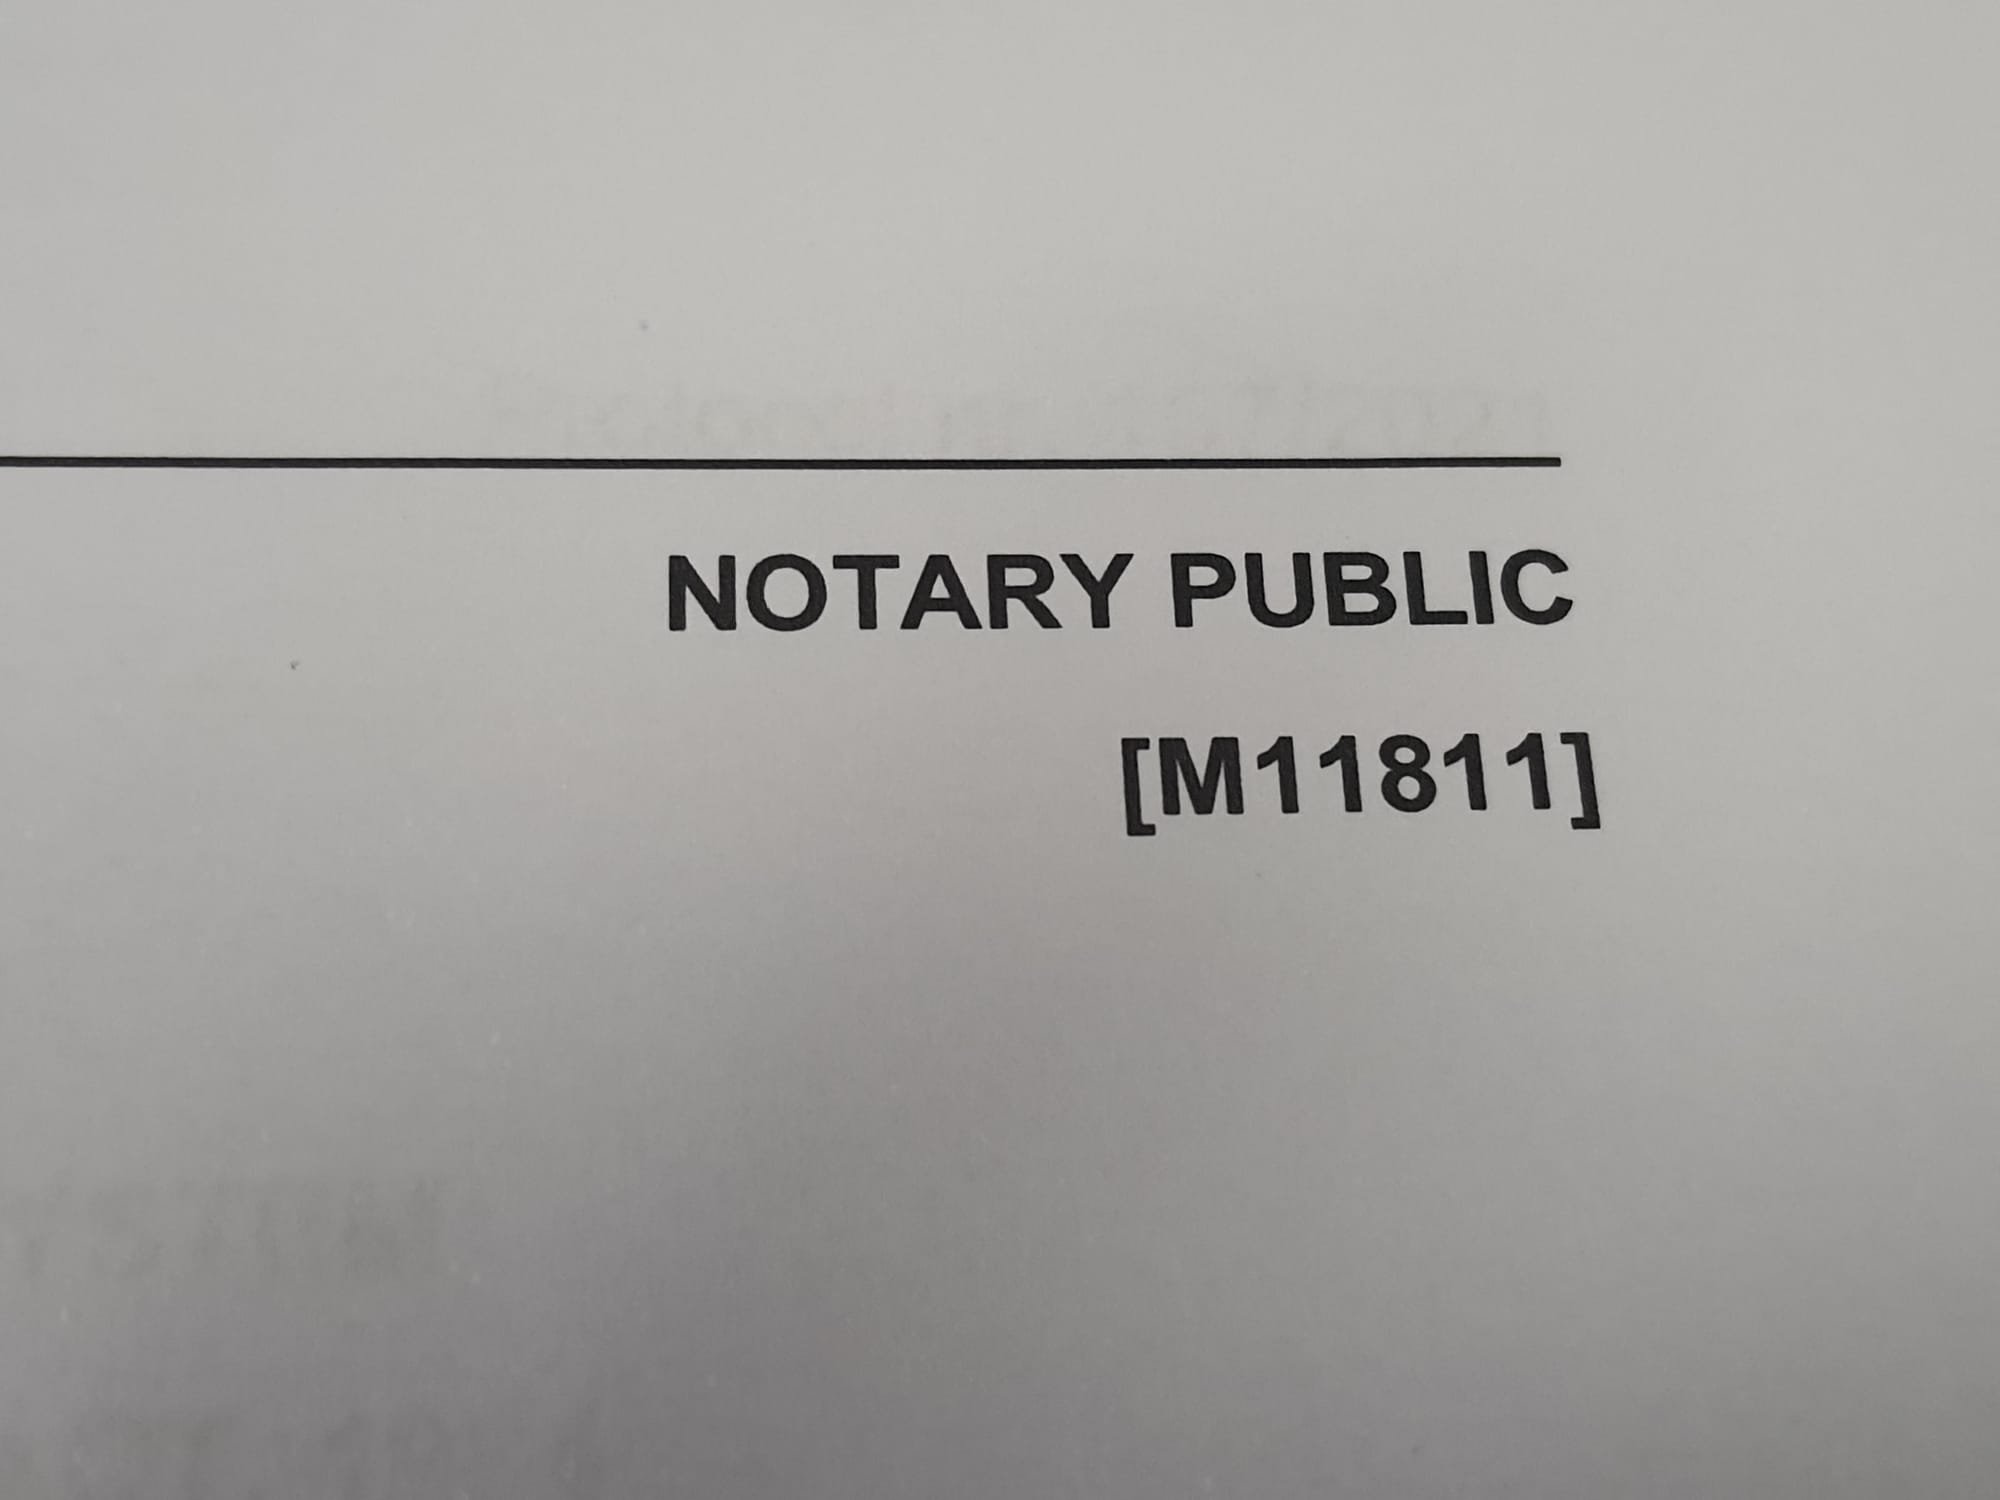 Notary Public Signature